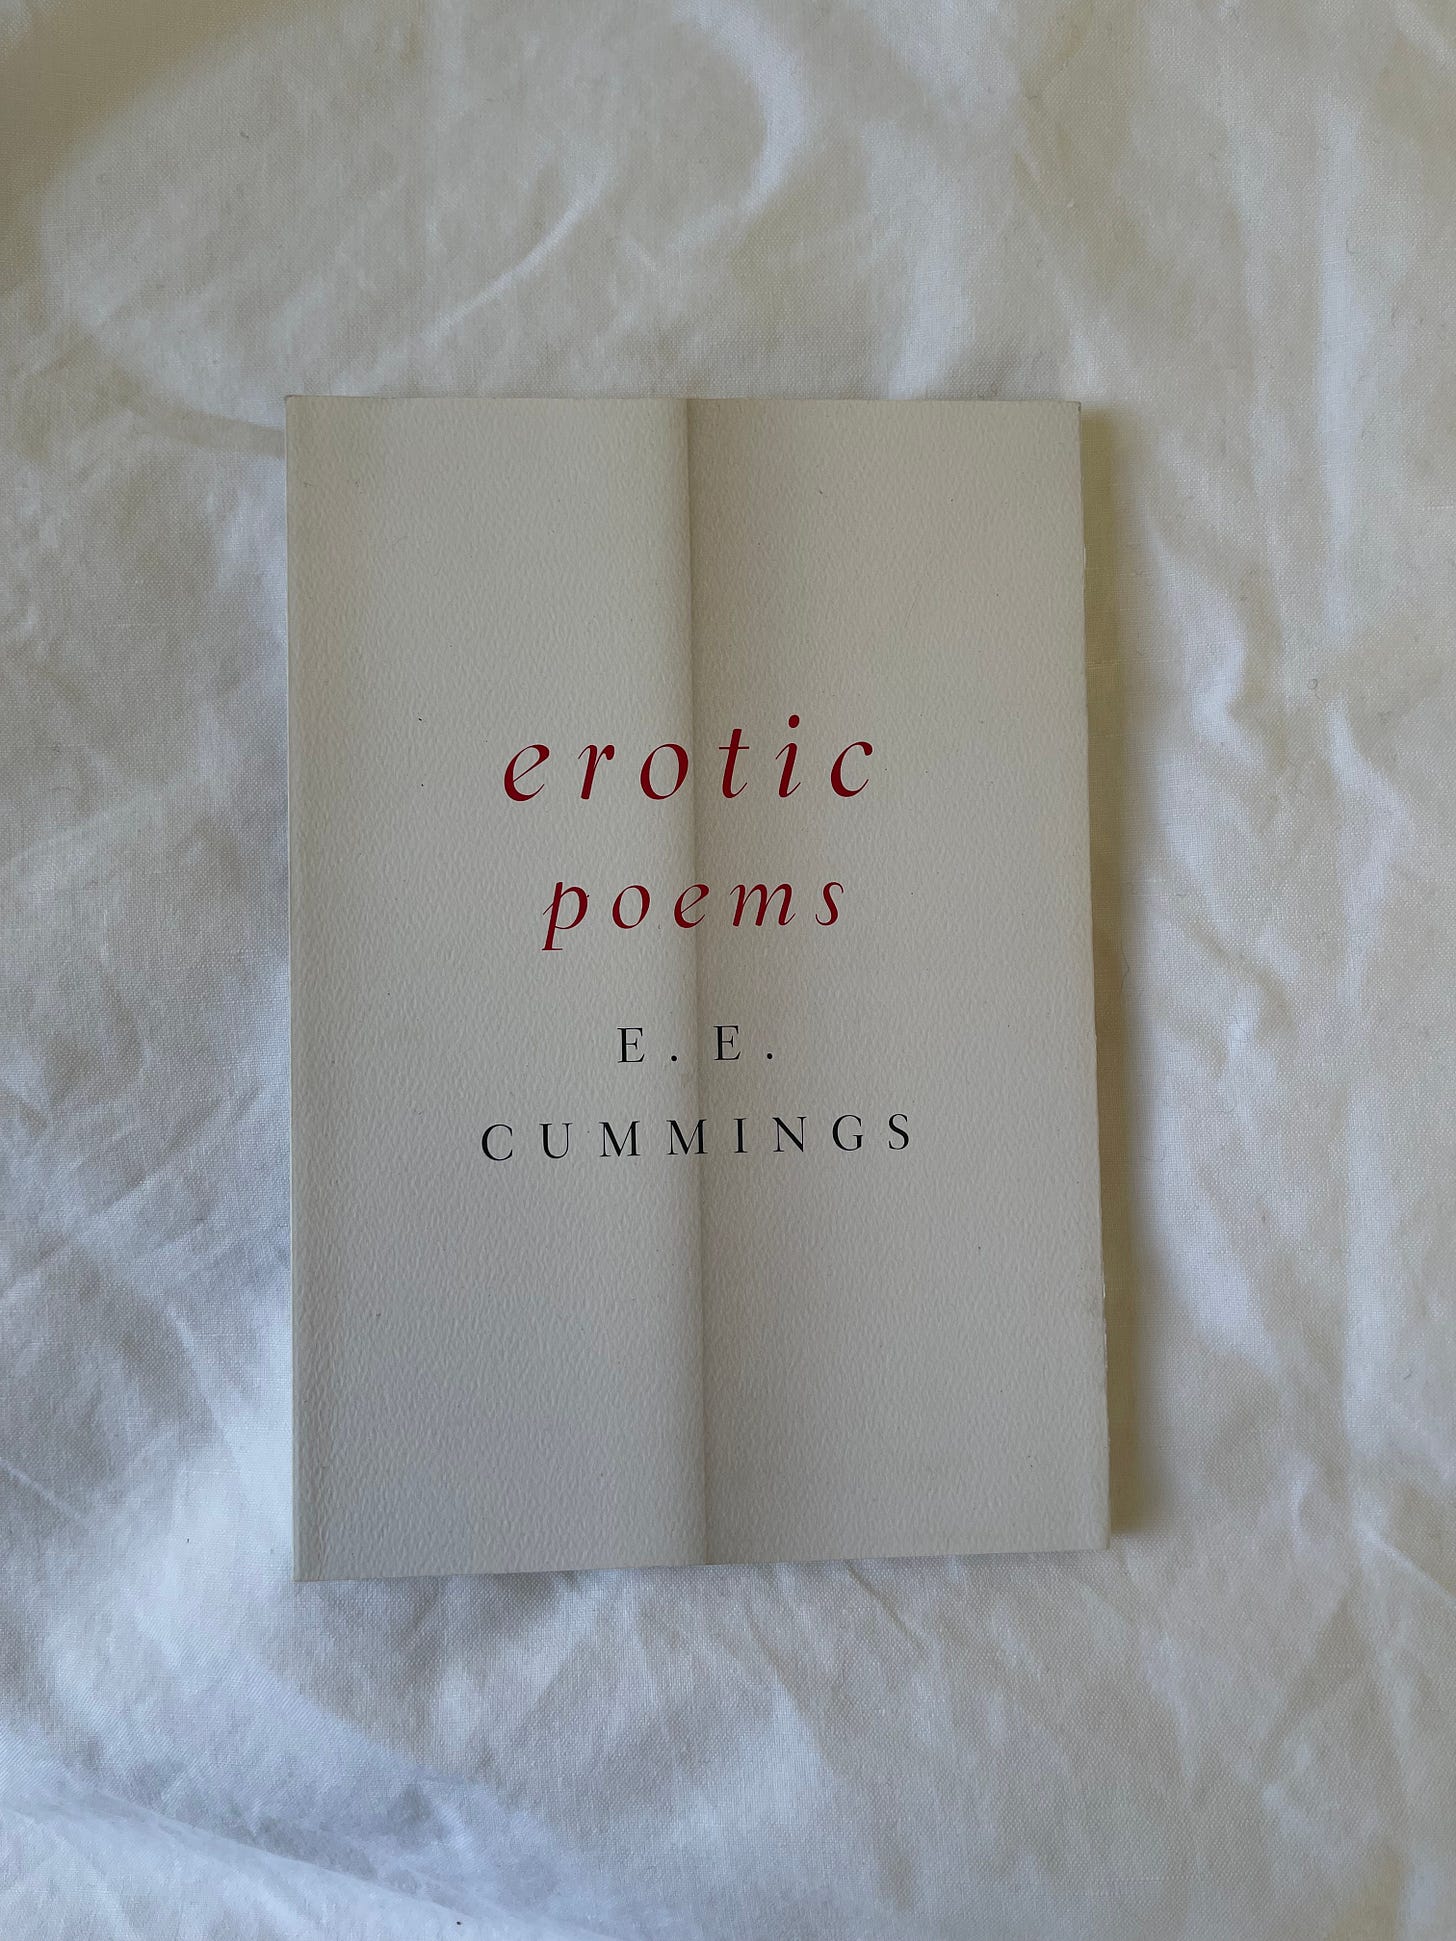 Ee cummings erotic poems